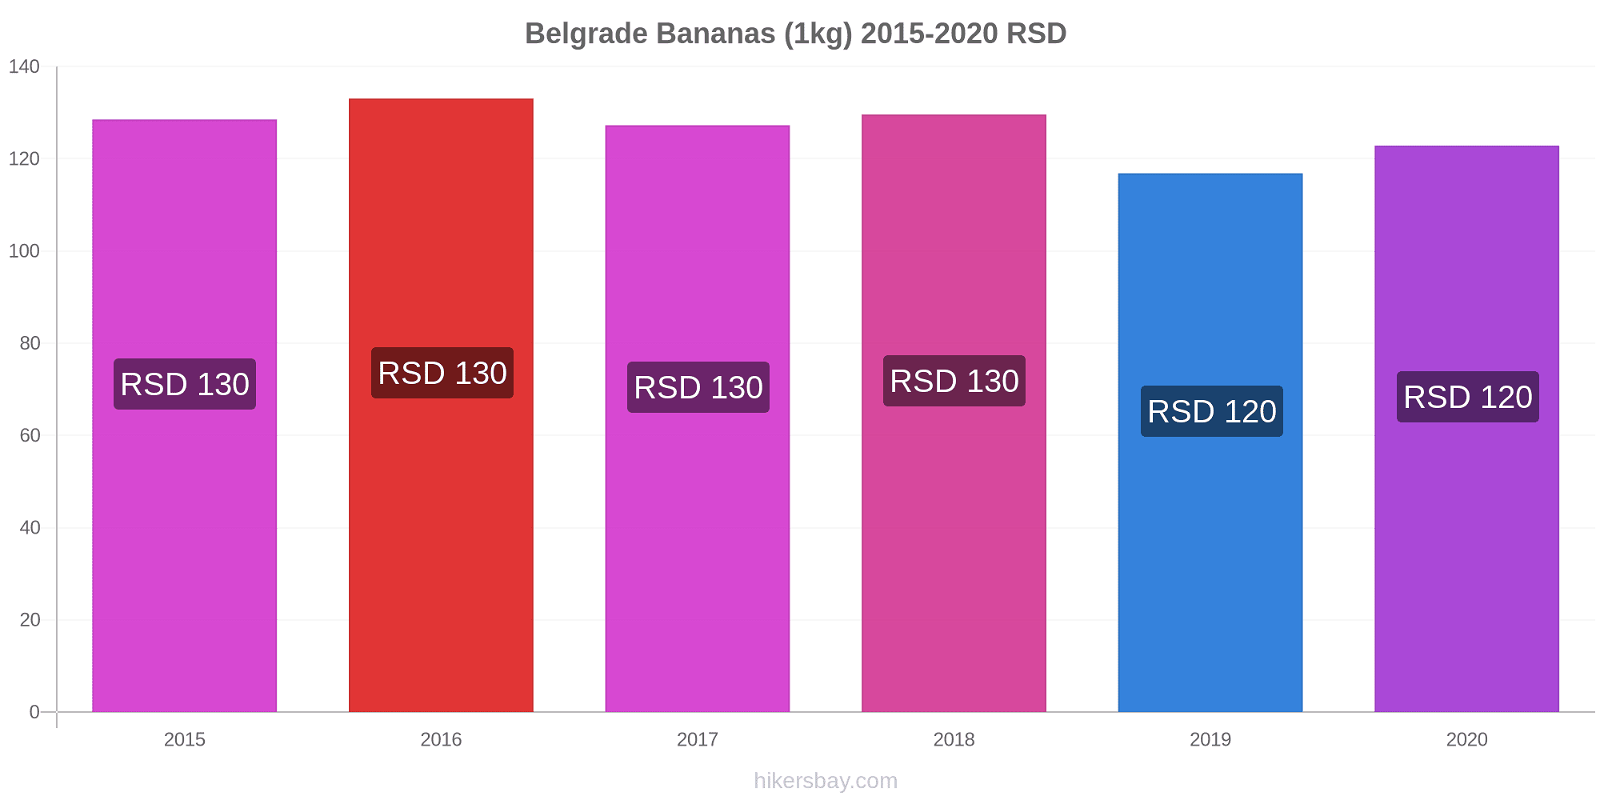 Belgrade price changes Bananas (1kg) hikersbay.com